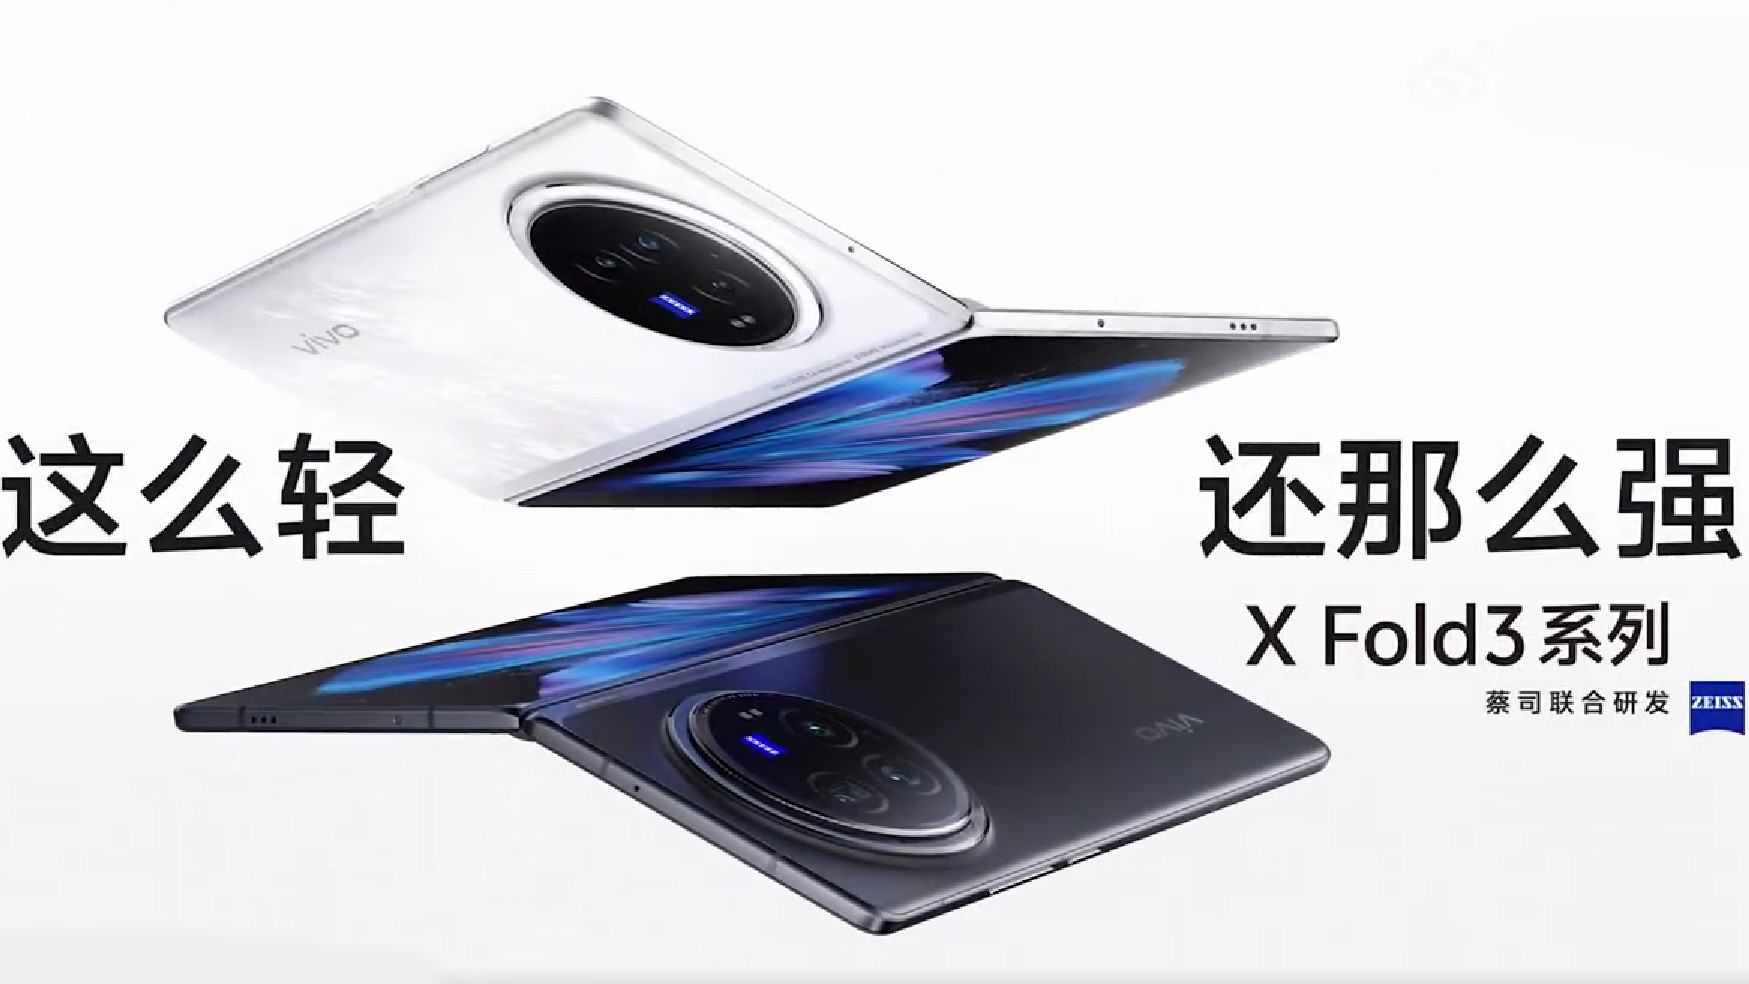 dispositivos vivo x fold serie 3 weibo